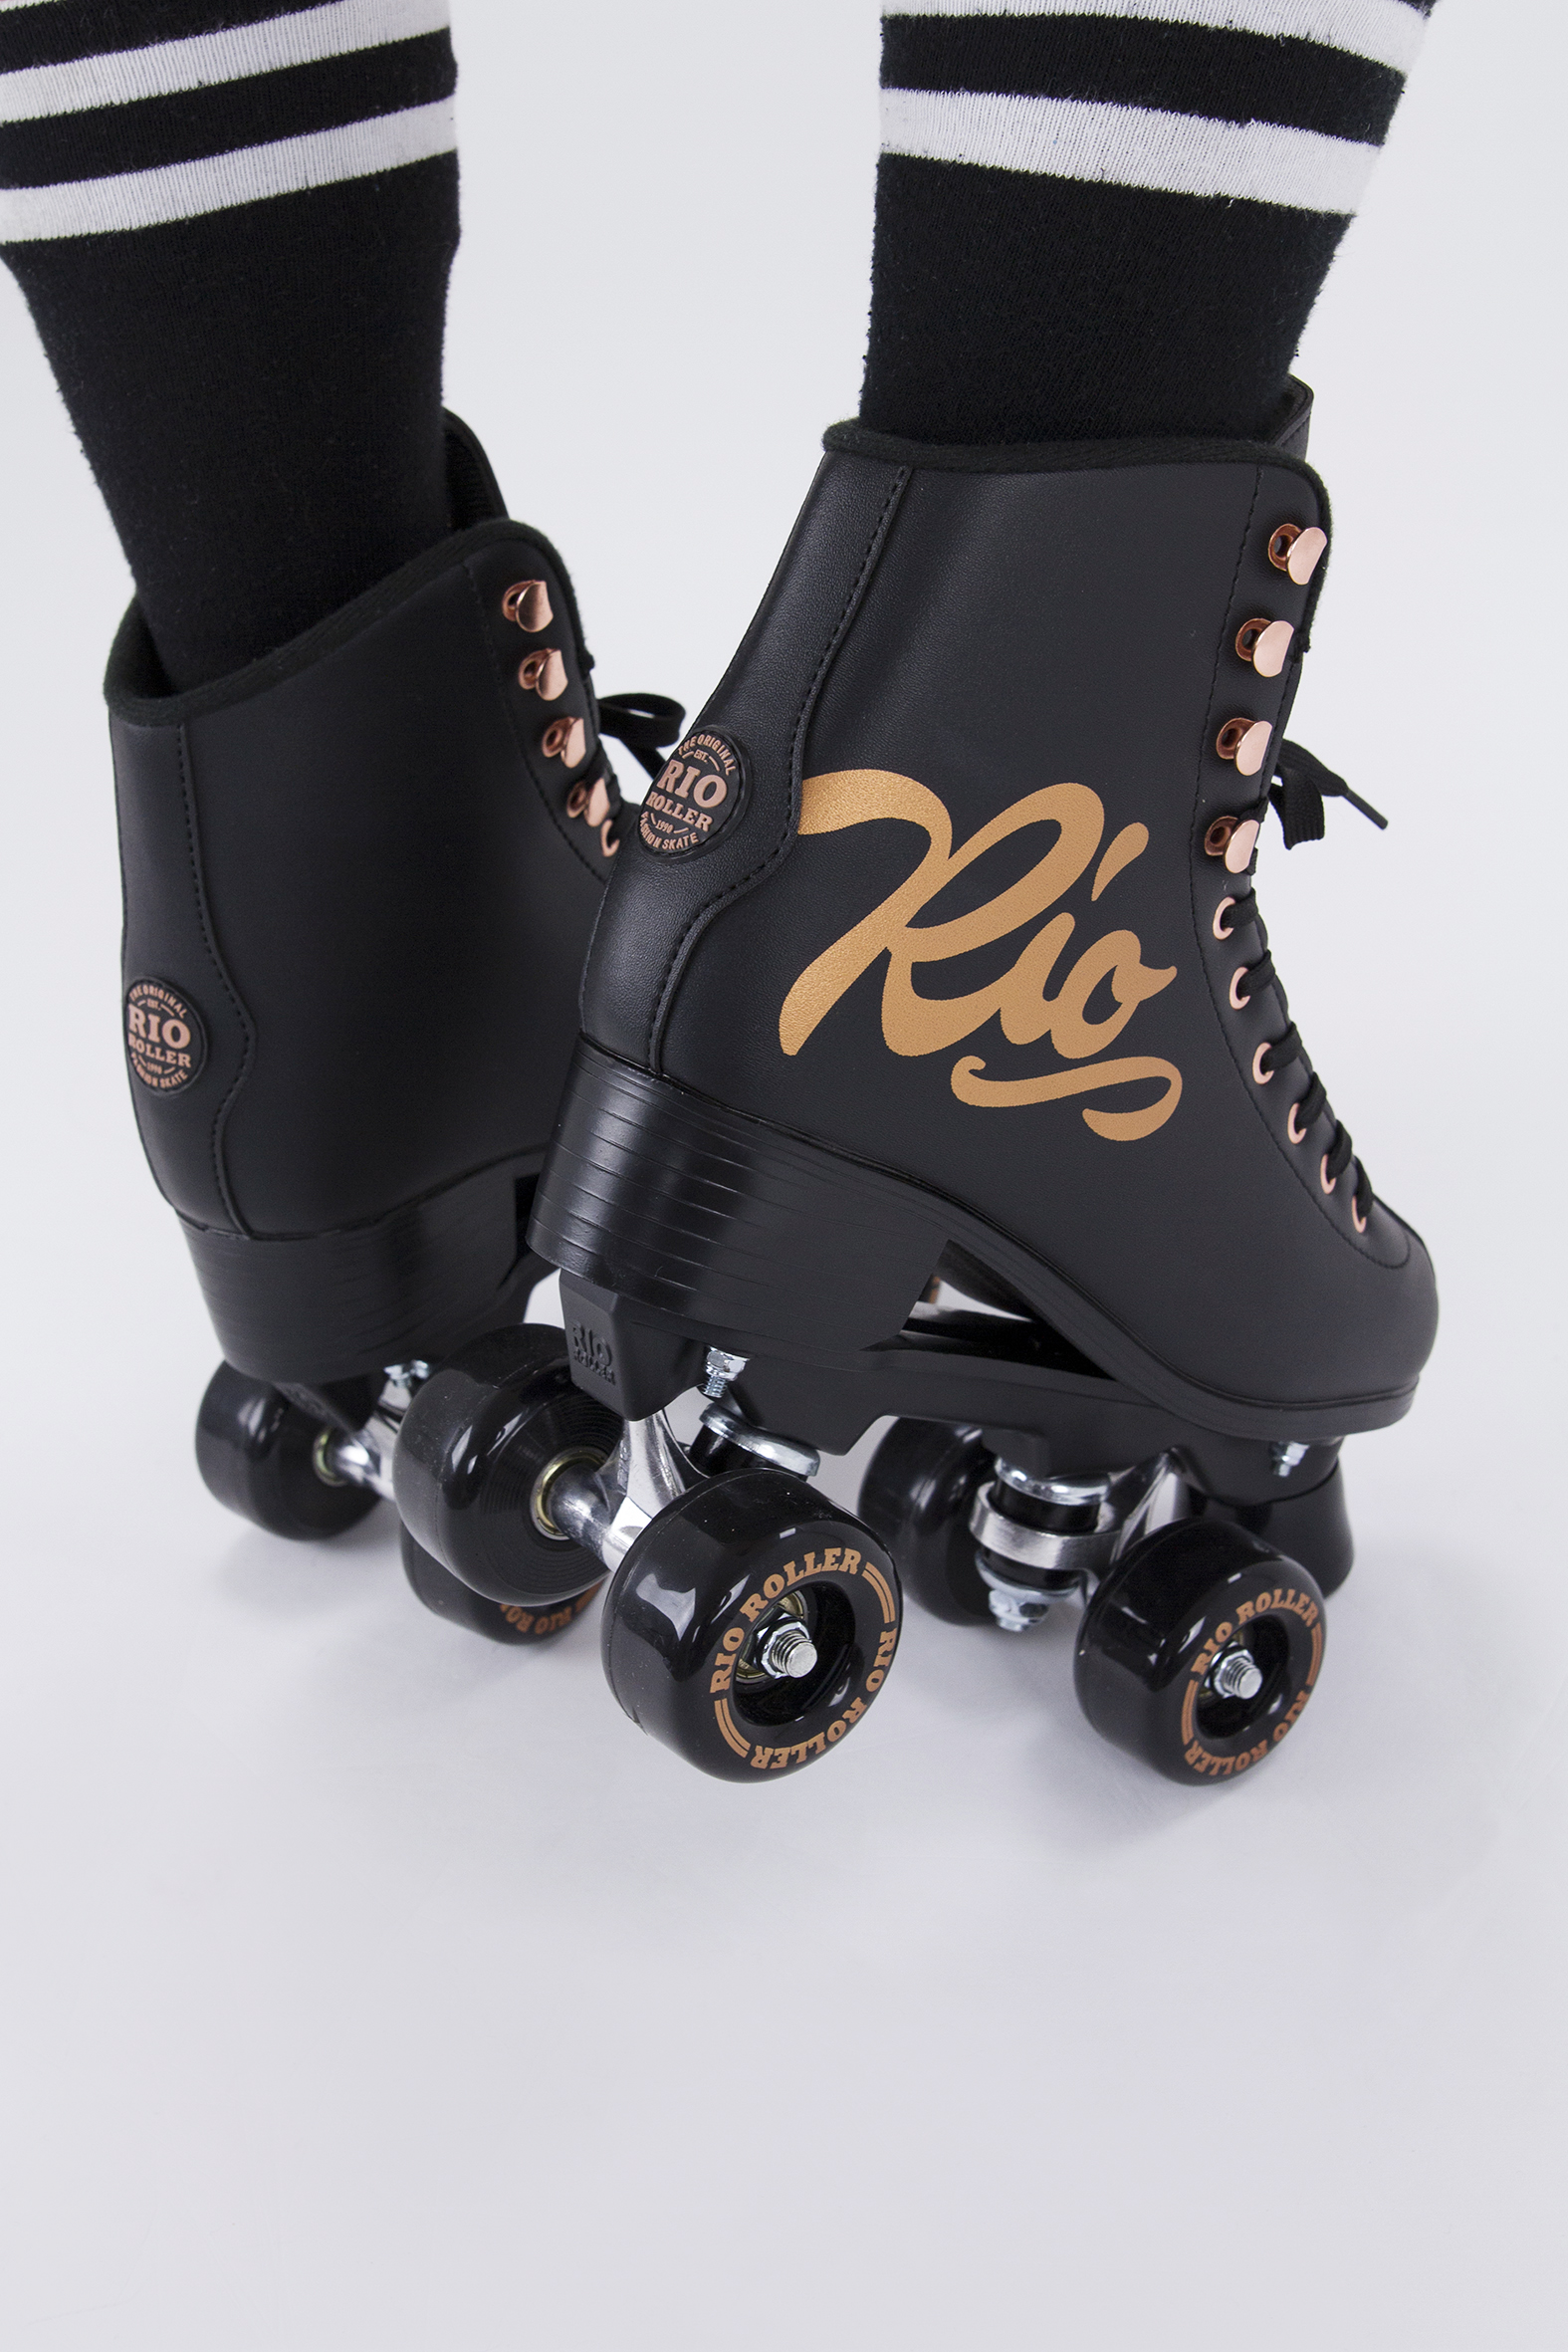 Rio Roller Figure Pro Quad Skates Rose  Black